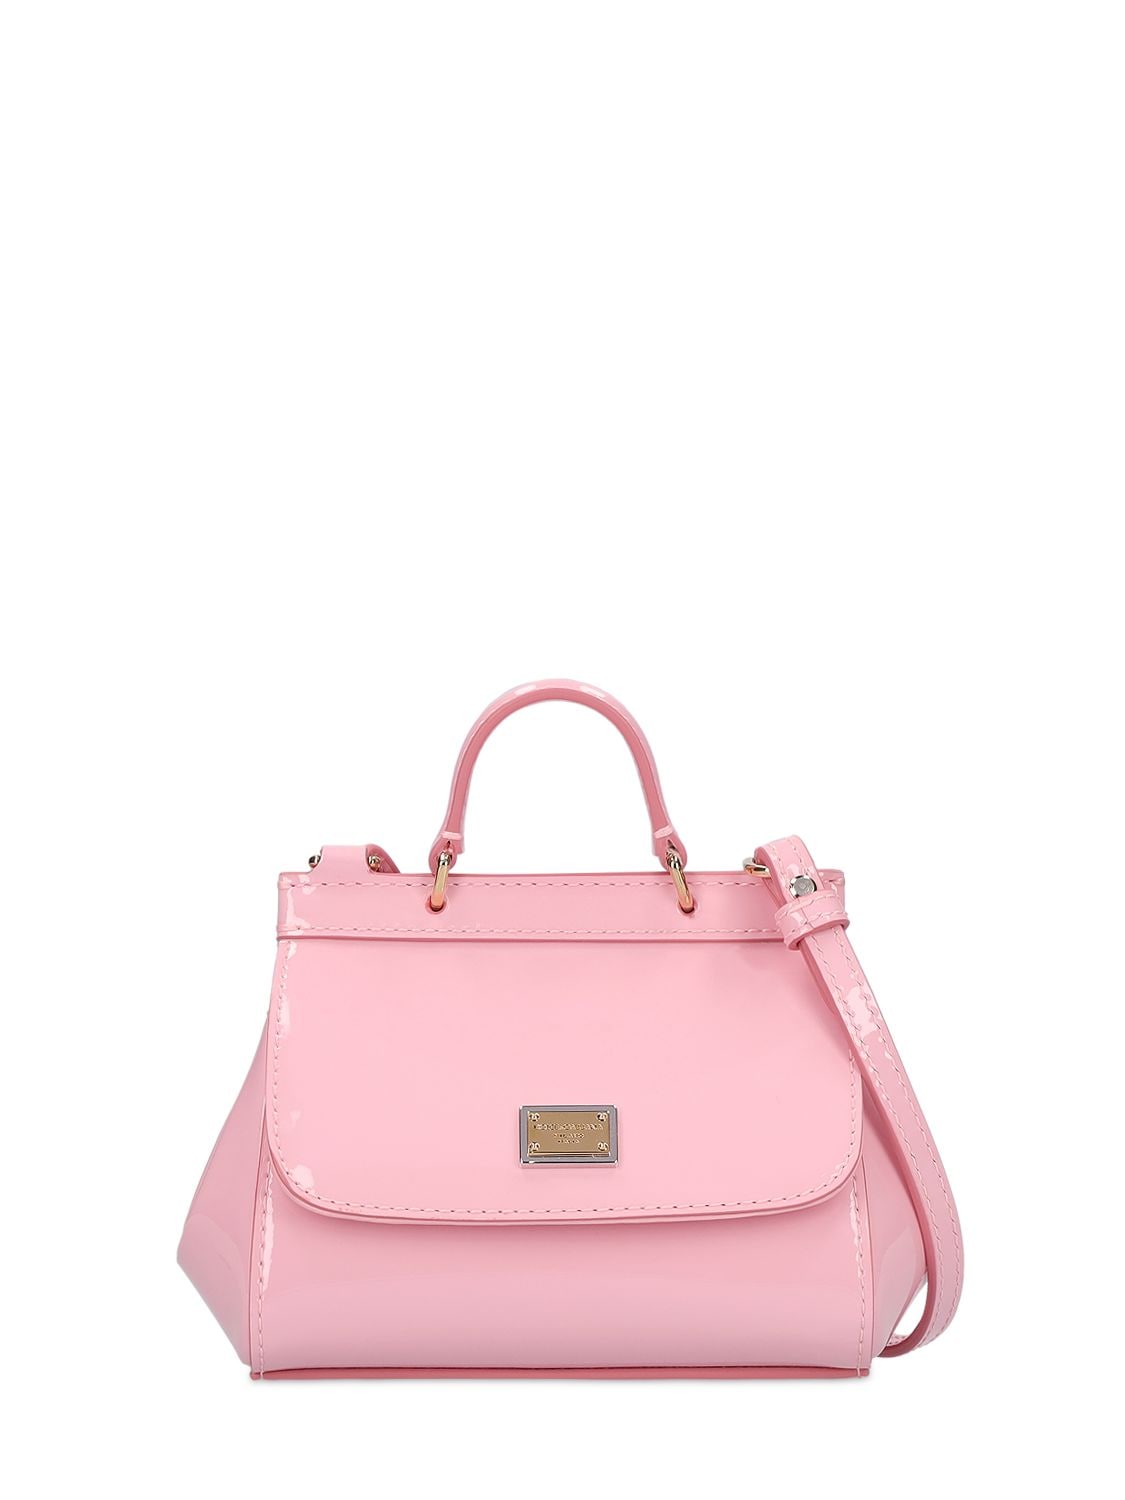 Dolce & Gabbana Sicily Patent Leather Shoulder Bag In Pink